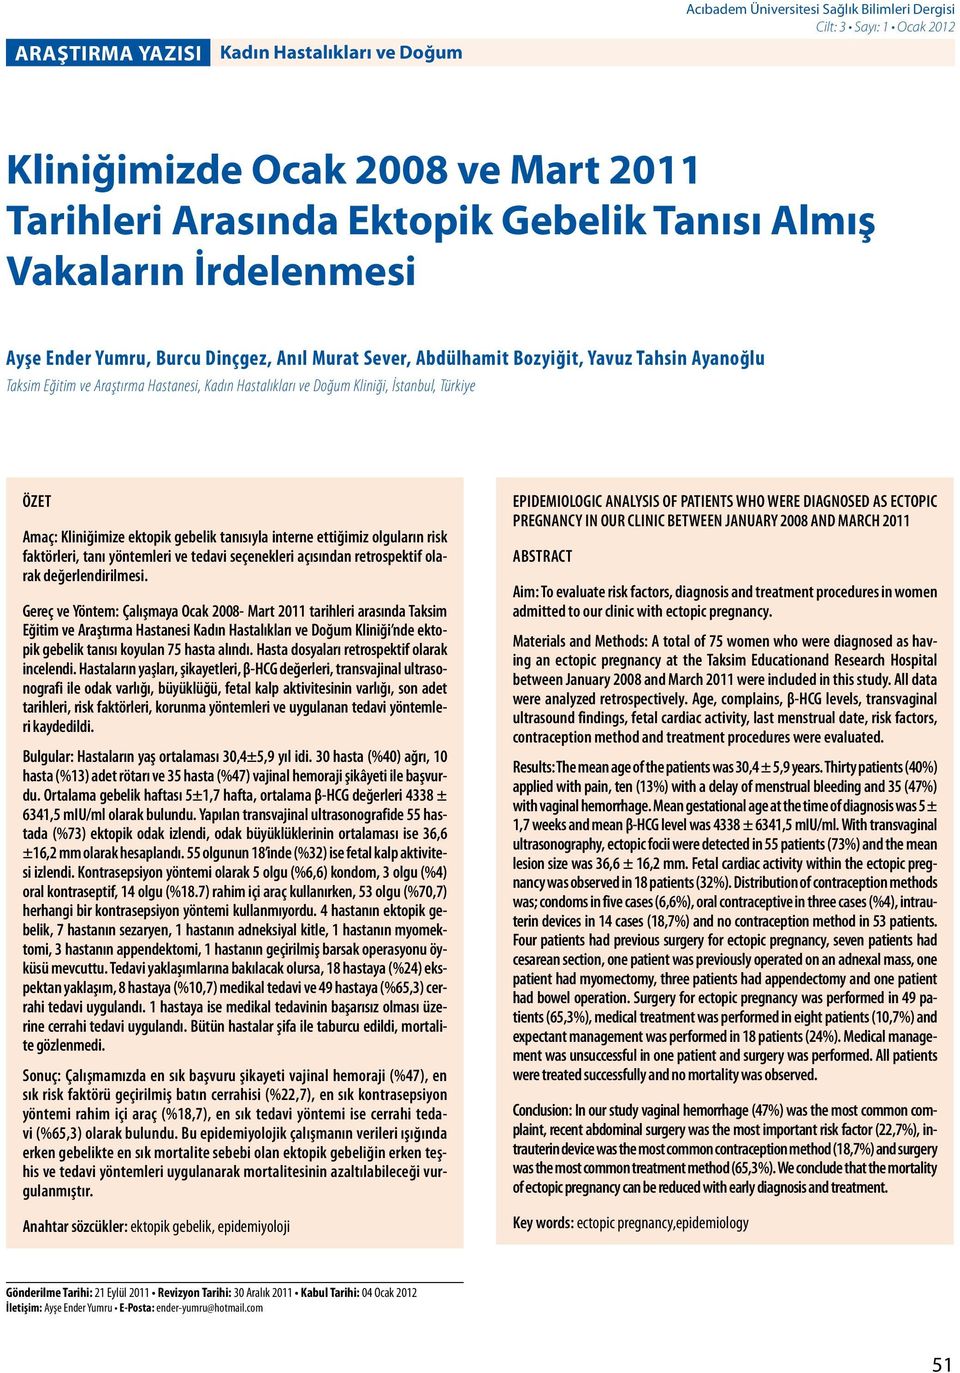 İstanbul, Türkiye ÖZET Amaç: Kliniğimize ektopik gebelik tanısıyla interne ettiğimiz olguların risk faktörleri, tanı yöntemleri ve tedavi seçenekleri açısından retrospektif olarak değerlendirilmesi.